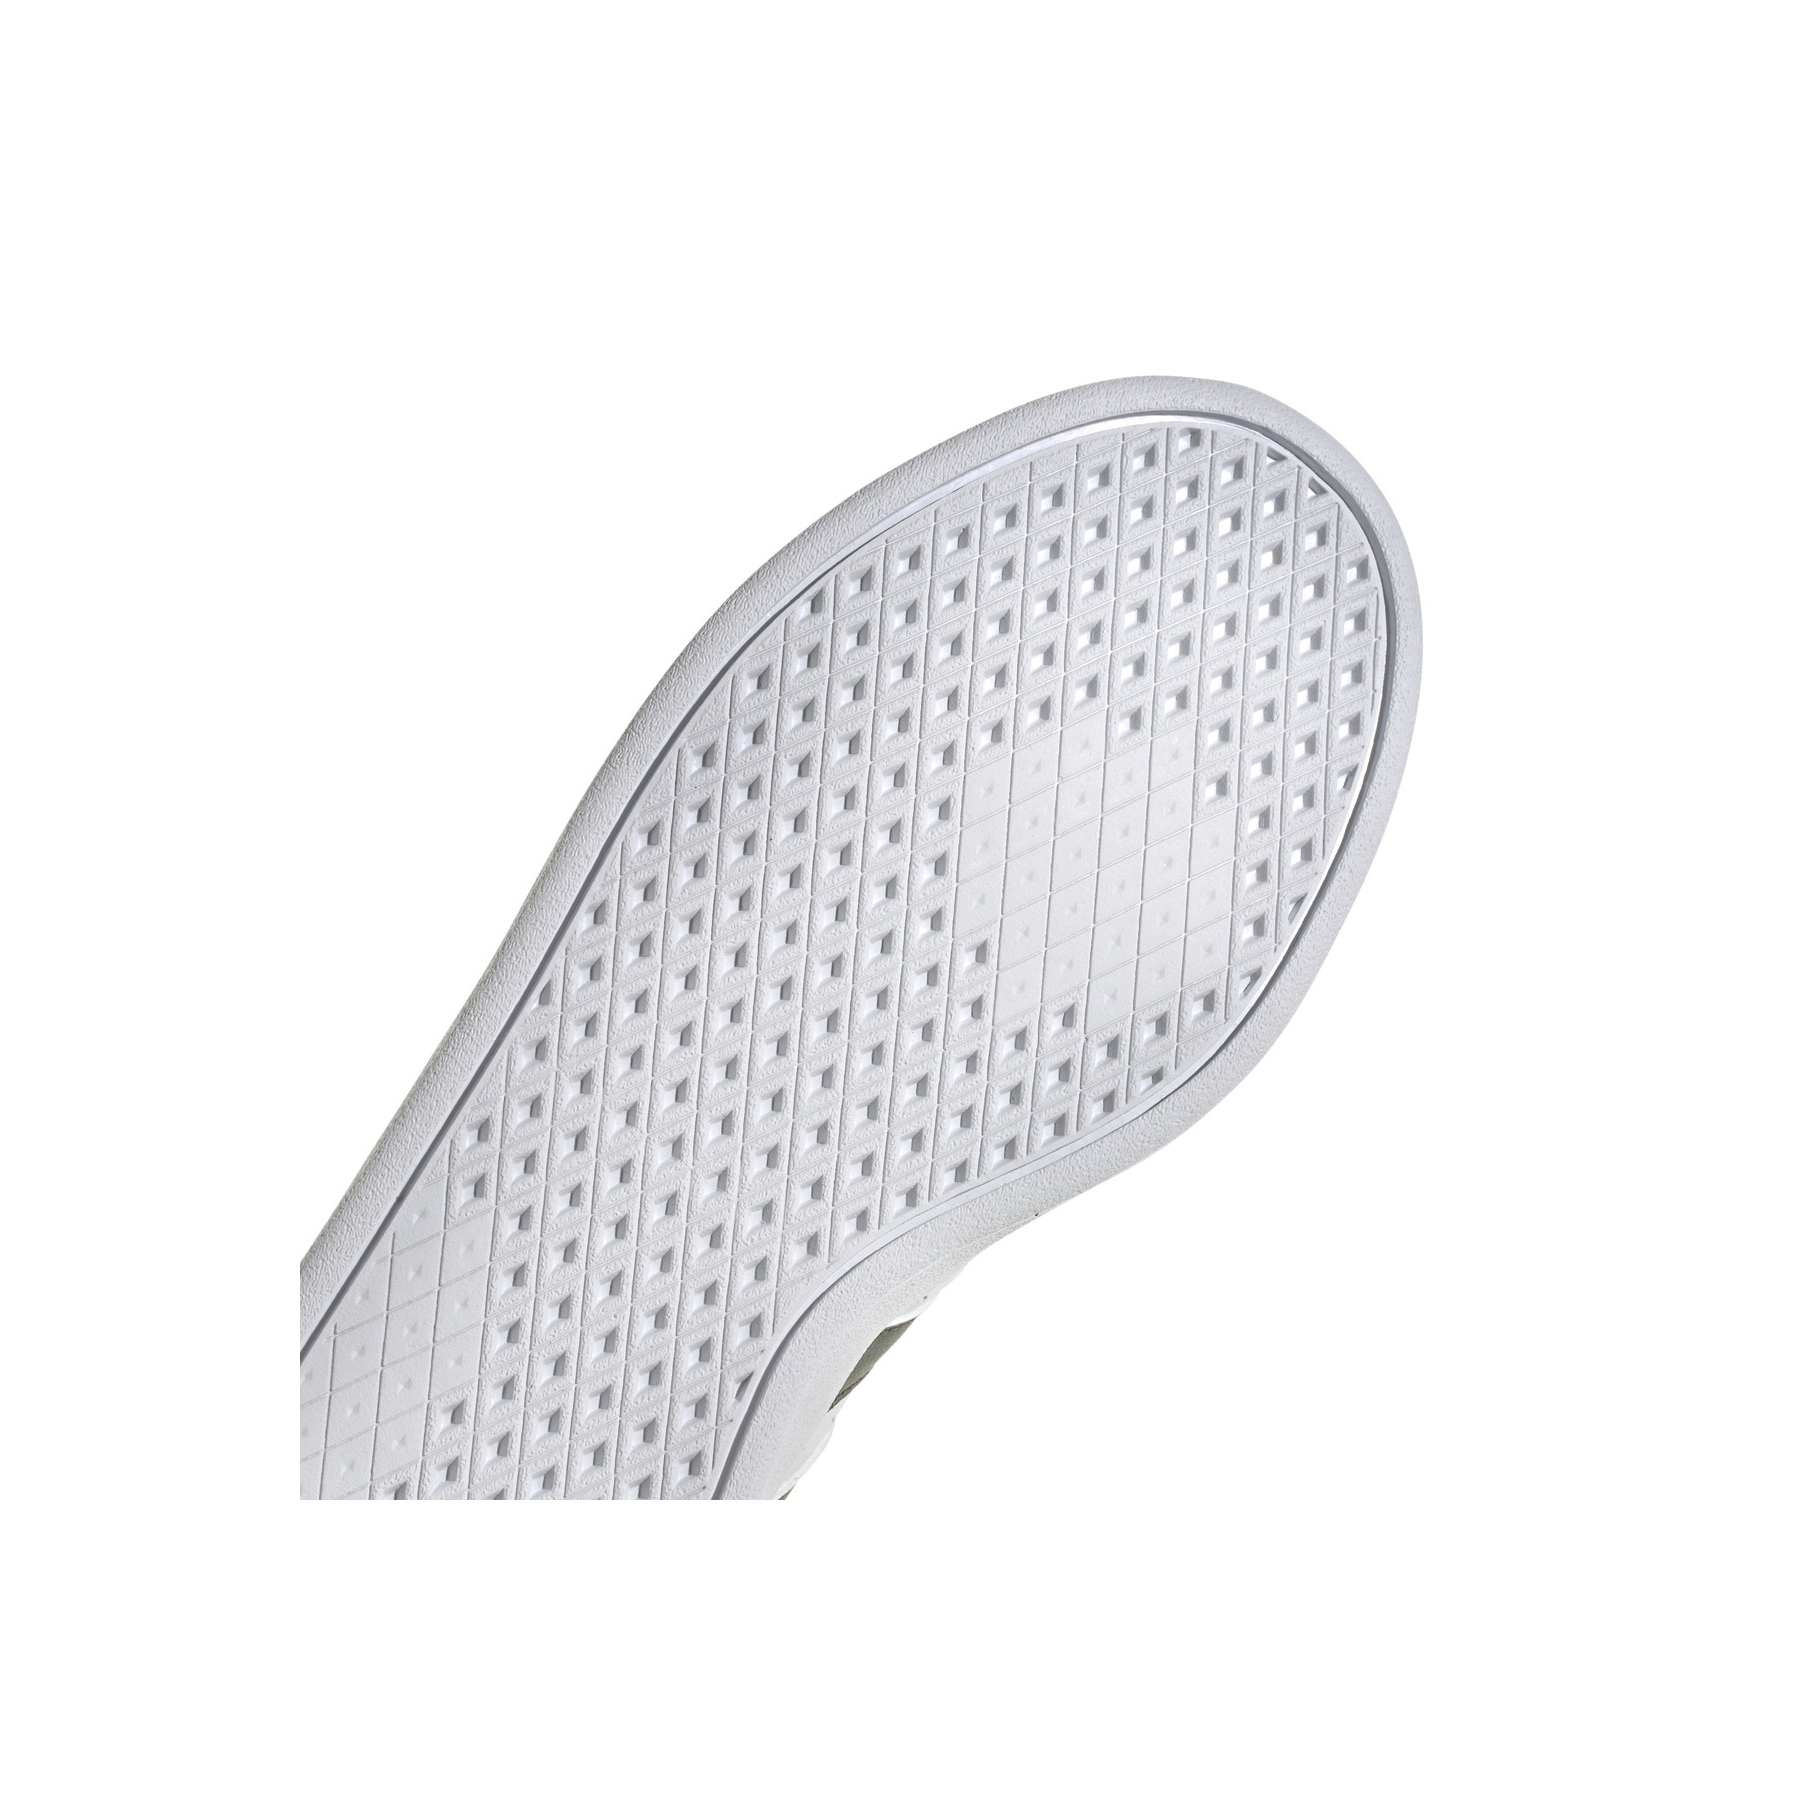 adidas Breaknet 2.0 Beyaz Spor Ayakkabı (ID9554)